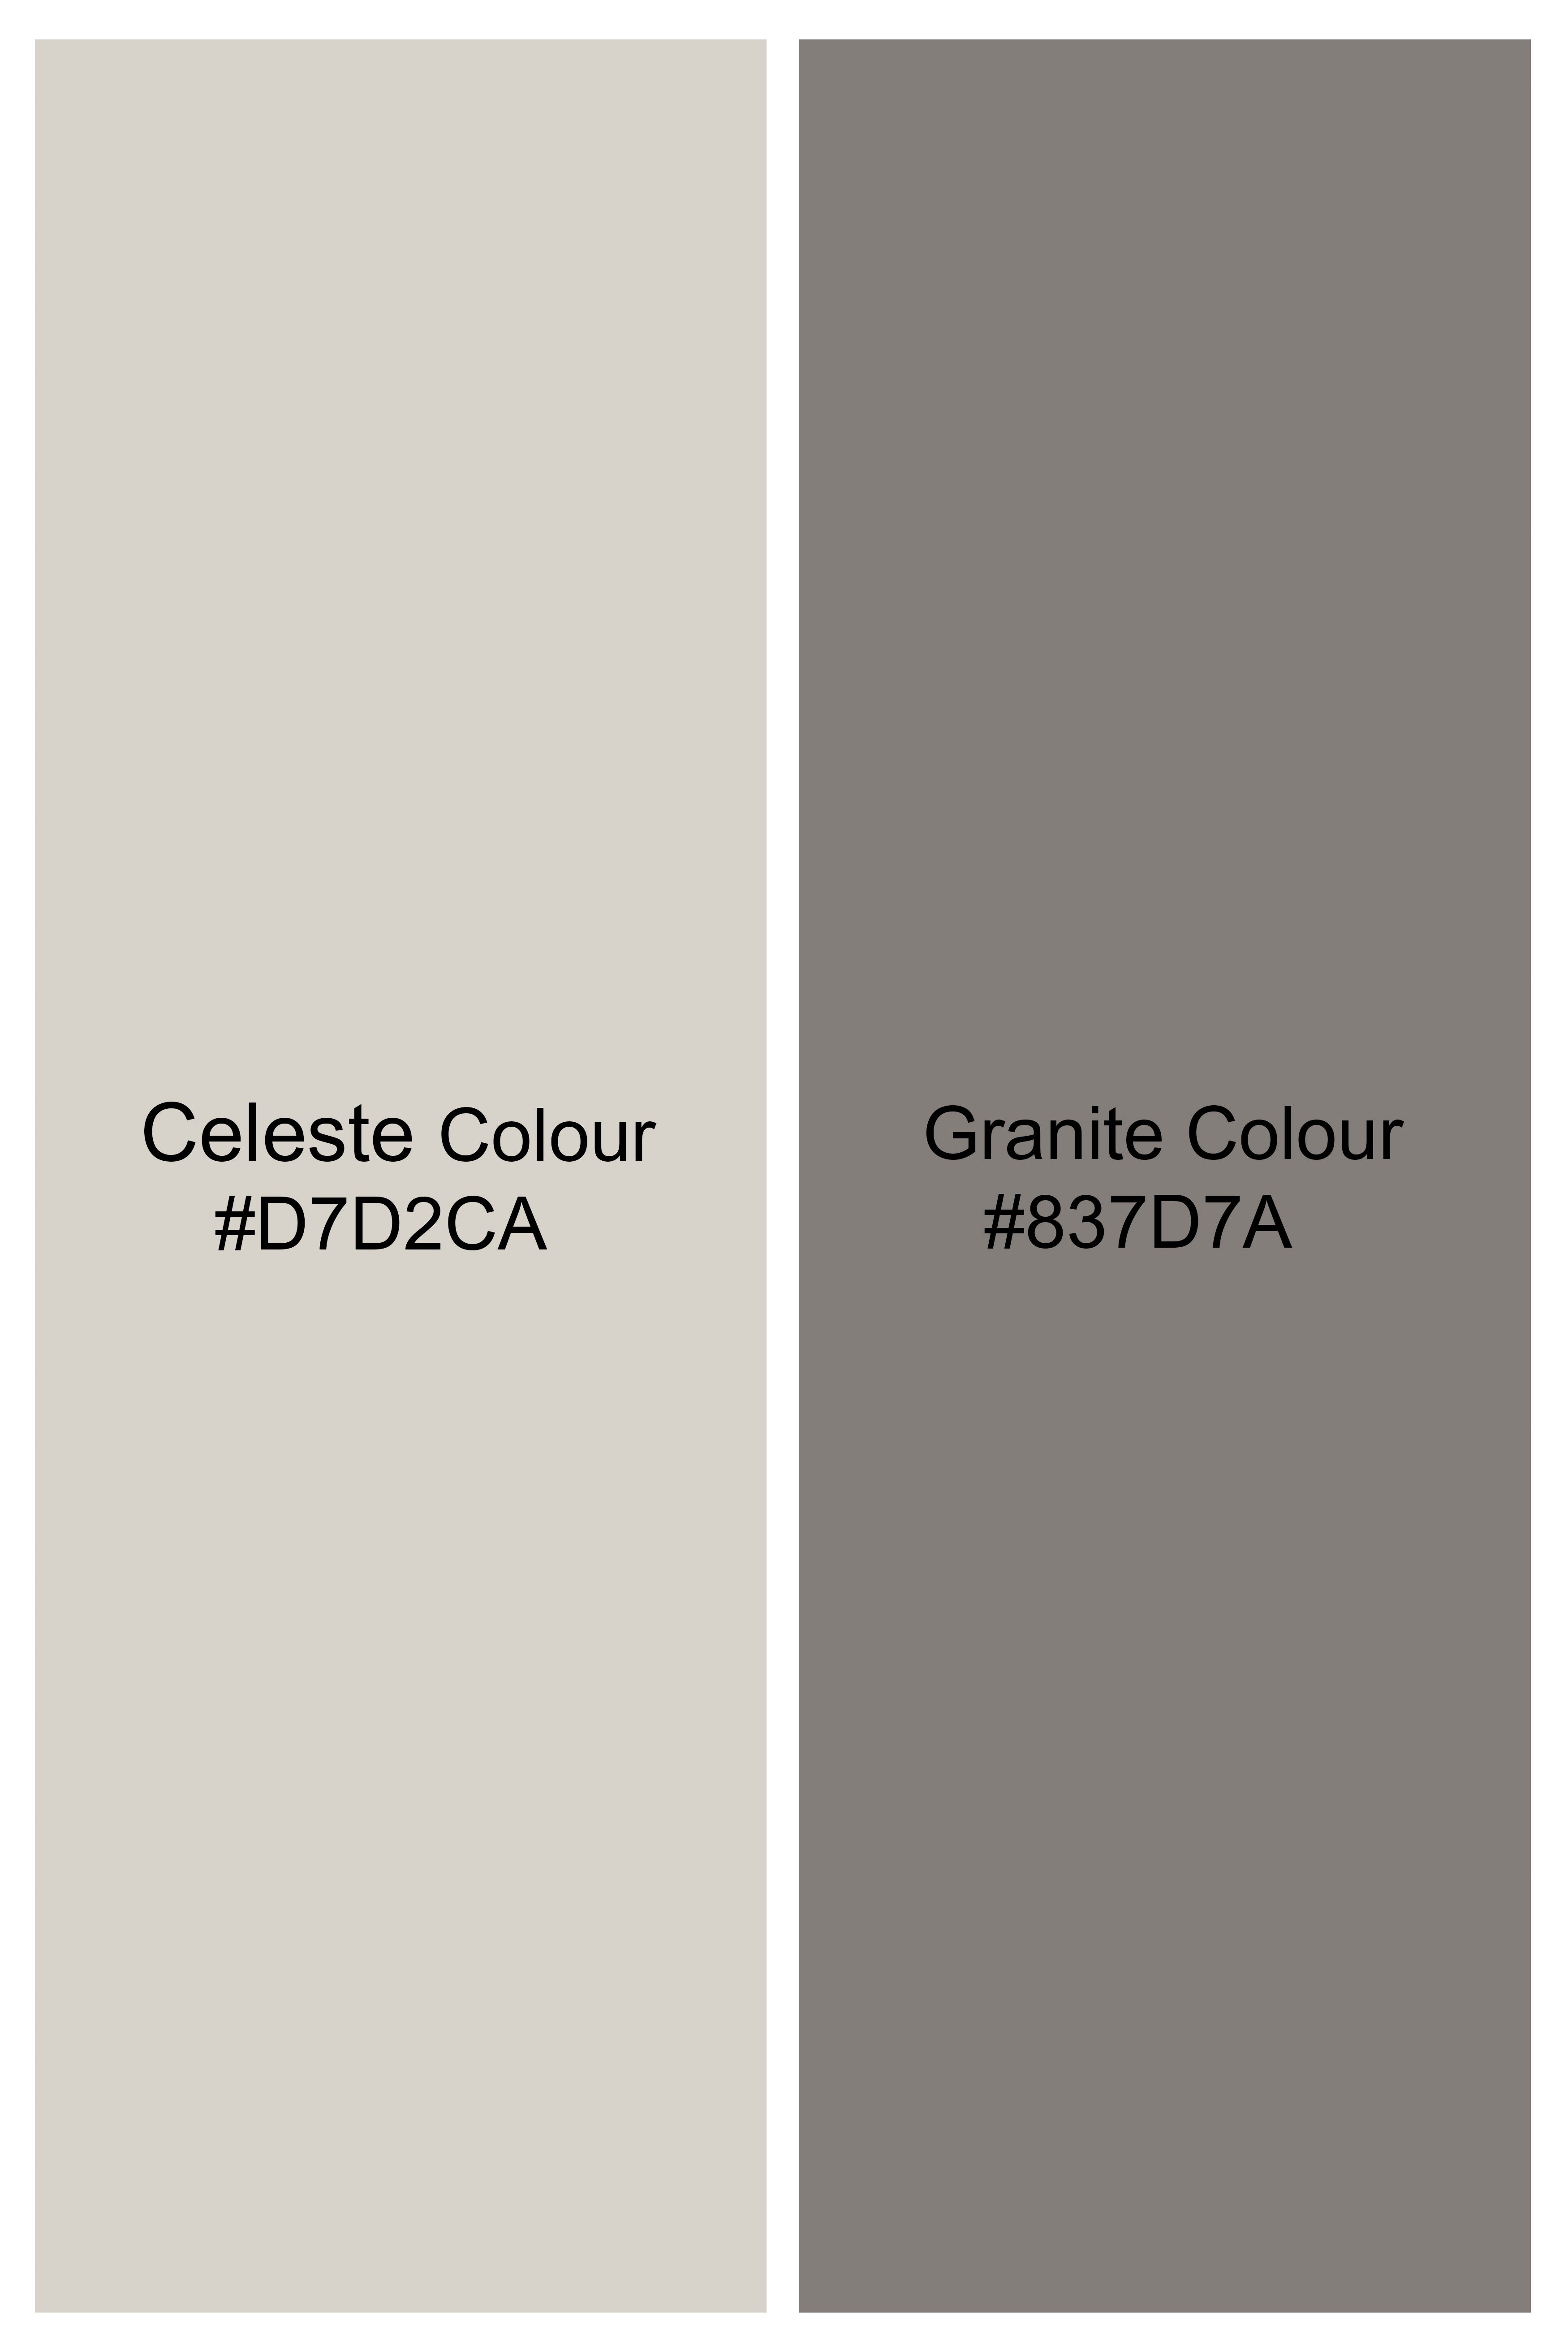 Celeste Cream Checkered Luxurious Linen Shorts SR379-28, SR379-30, SR379-32, SR379-34, SR379-36, SR379-38, SR379-40, SR379-42, SR379-44